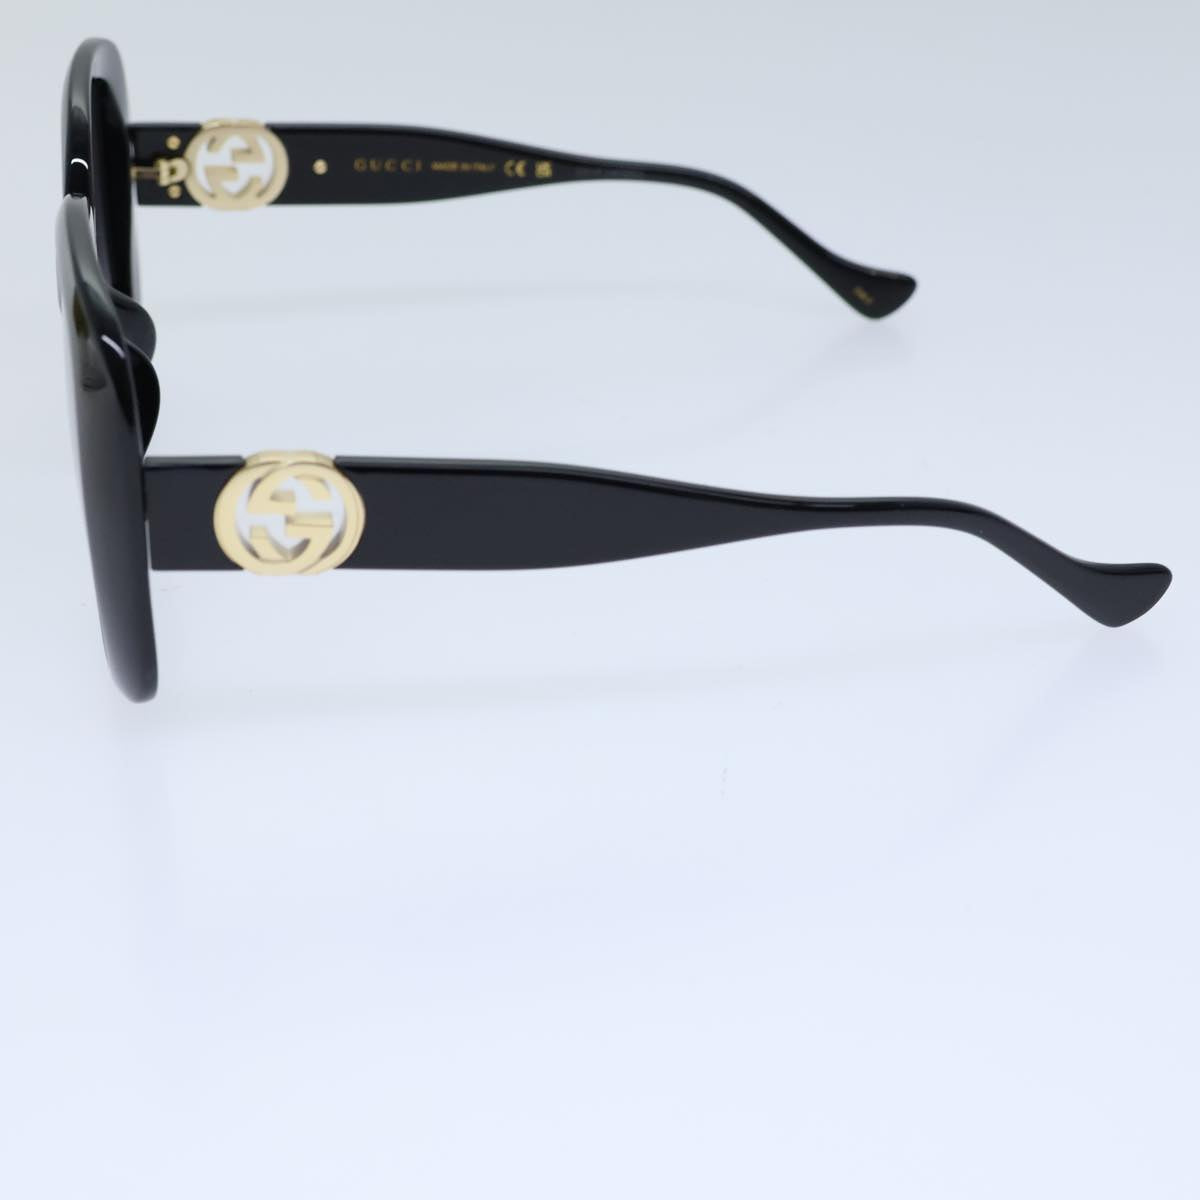 GUCCI Sunglasses plastic Black Auth 72911